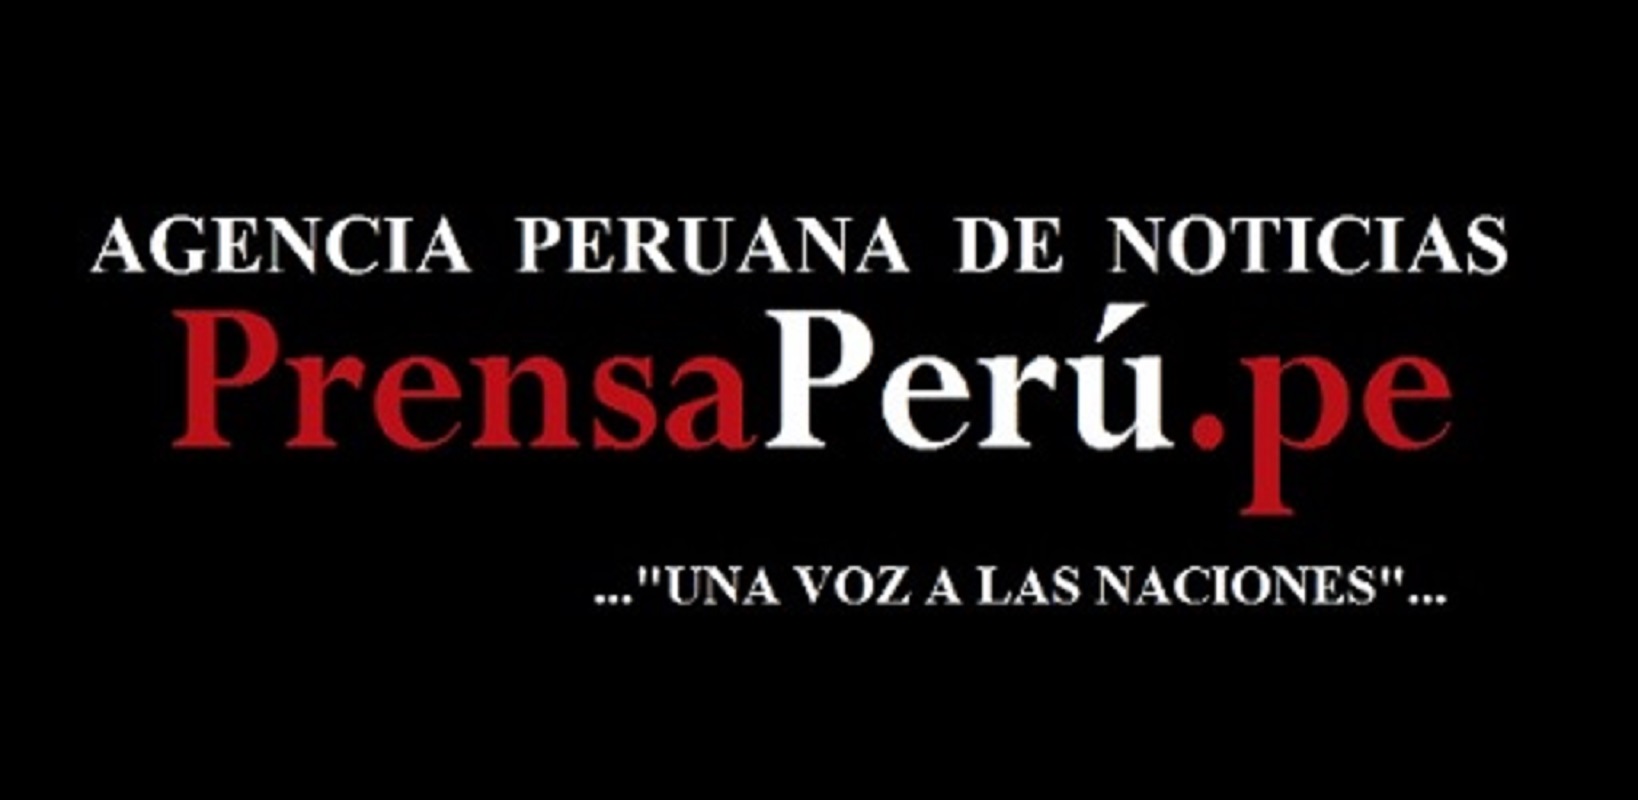 PrensaPerú.pe Agencia Peruana de Noticias "Una Voz a las Naciones"